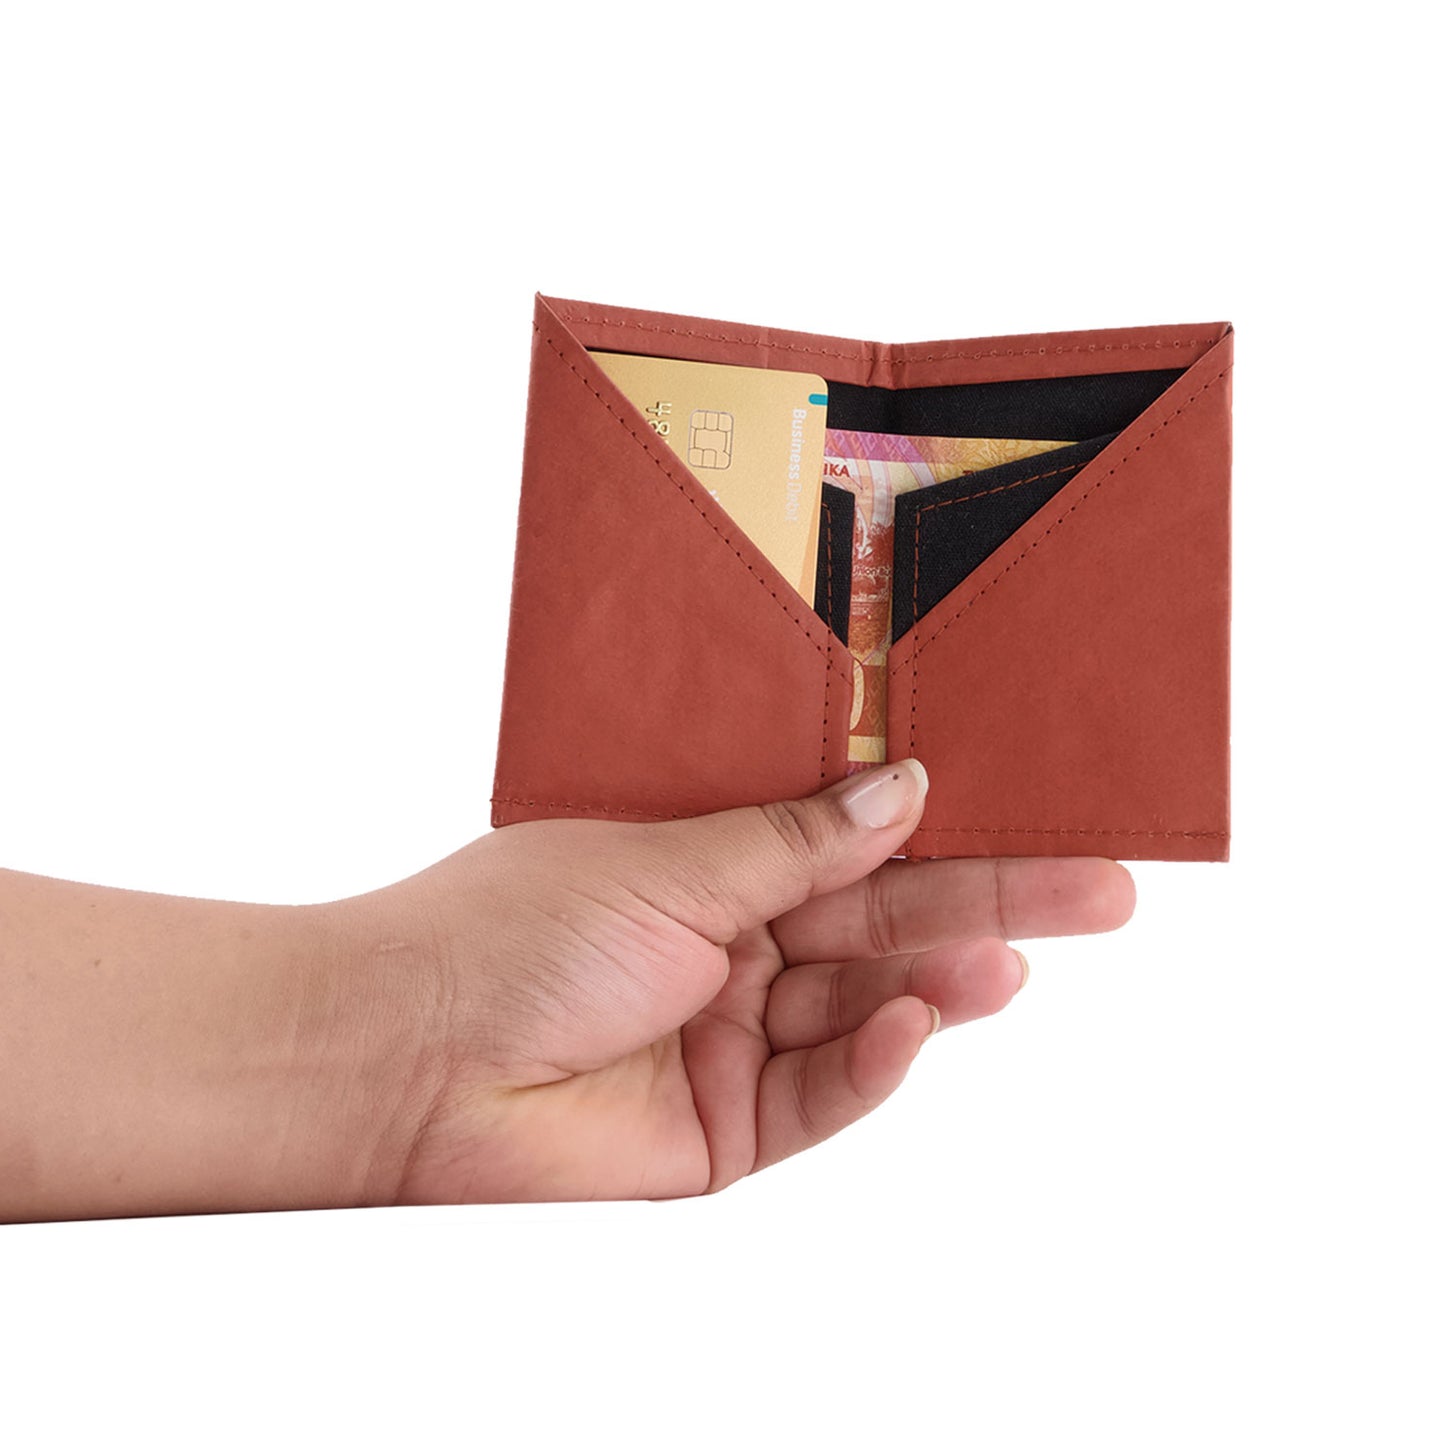 Interno portafoglio in carta recuperata rivestito in tessuto